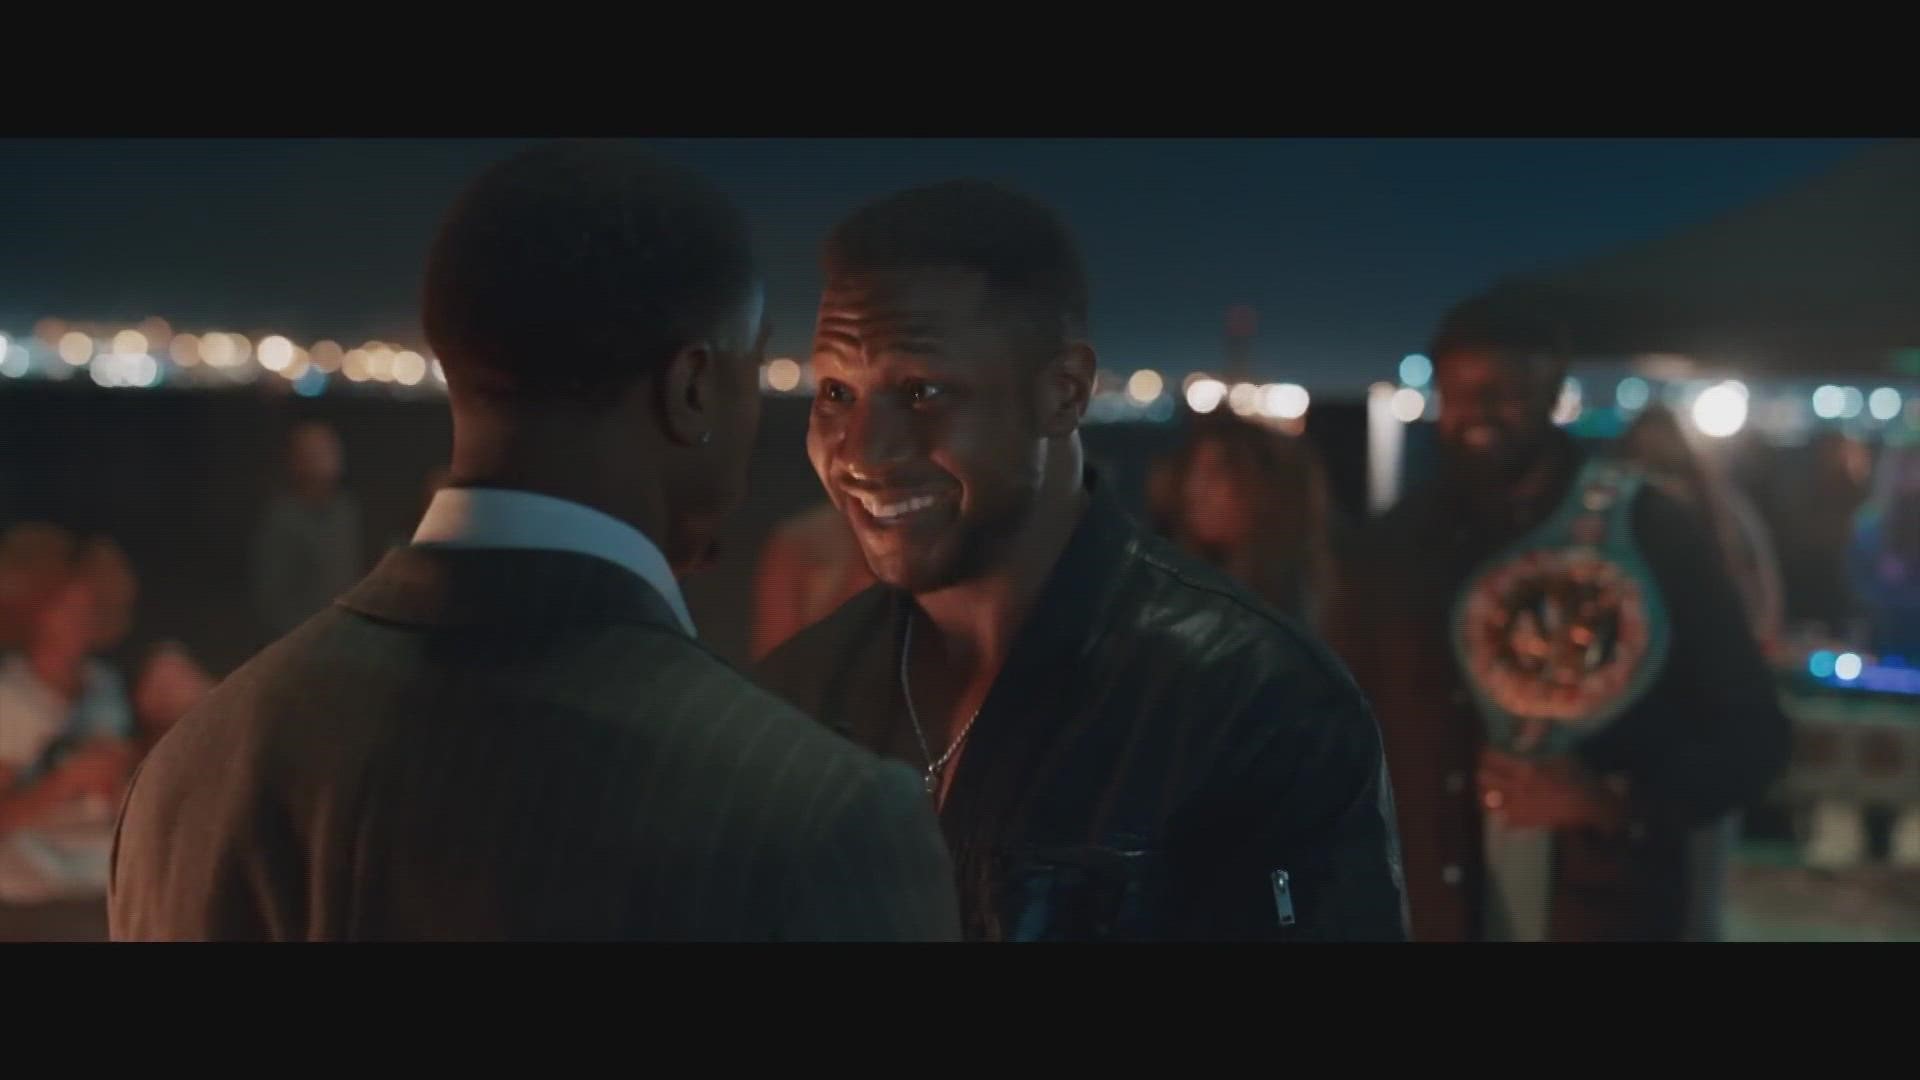 Creed 3 Michael B. Jordan Directorial Debut Has Release Date